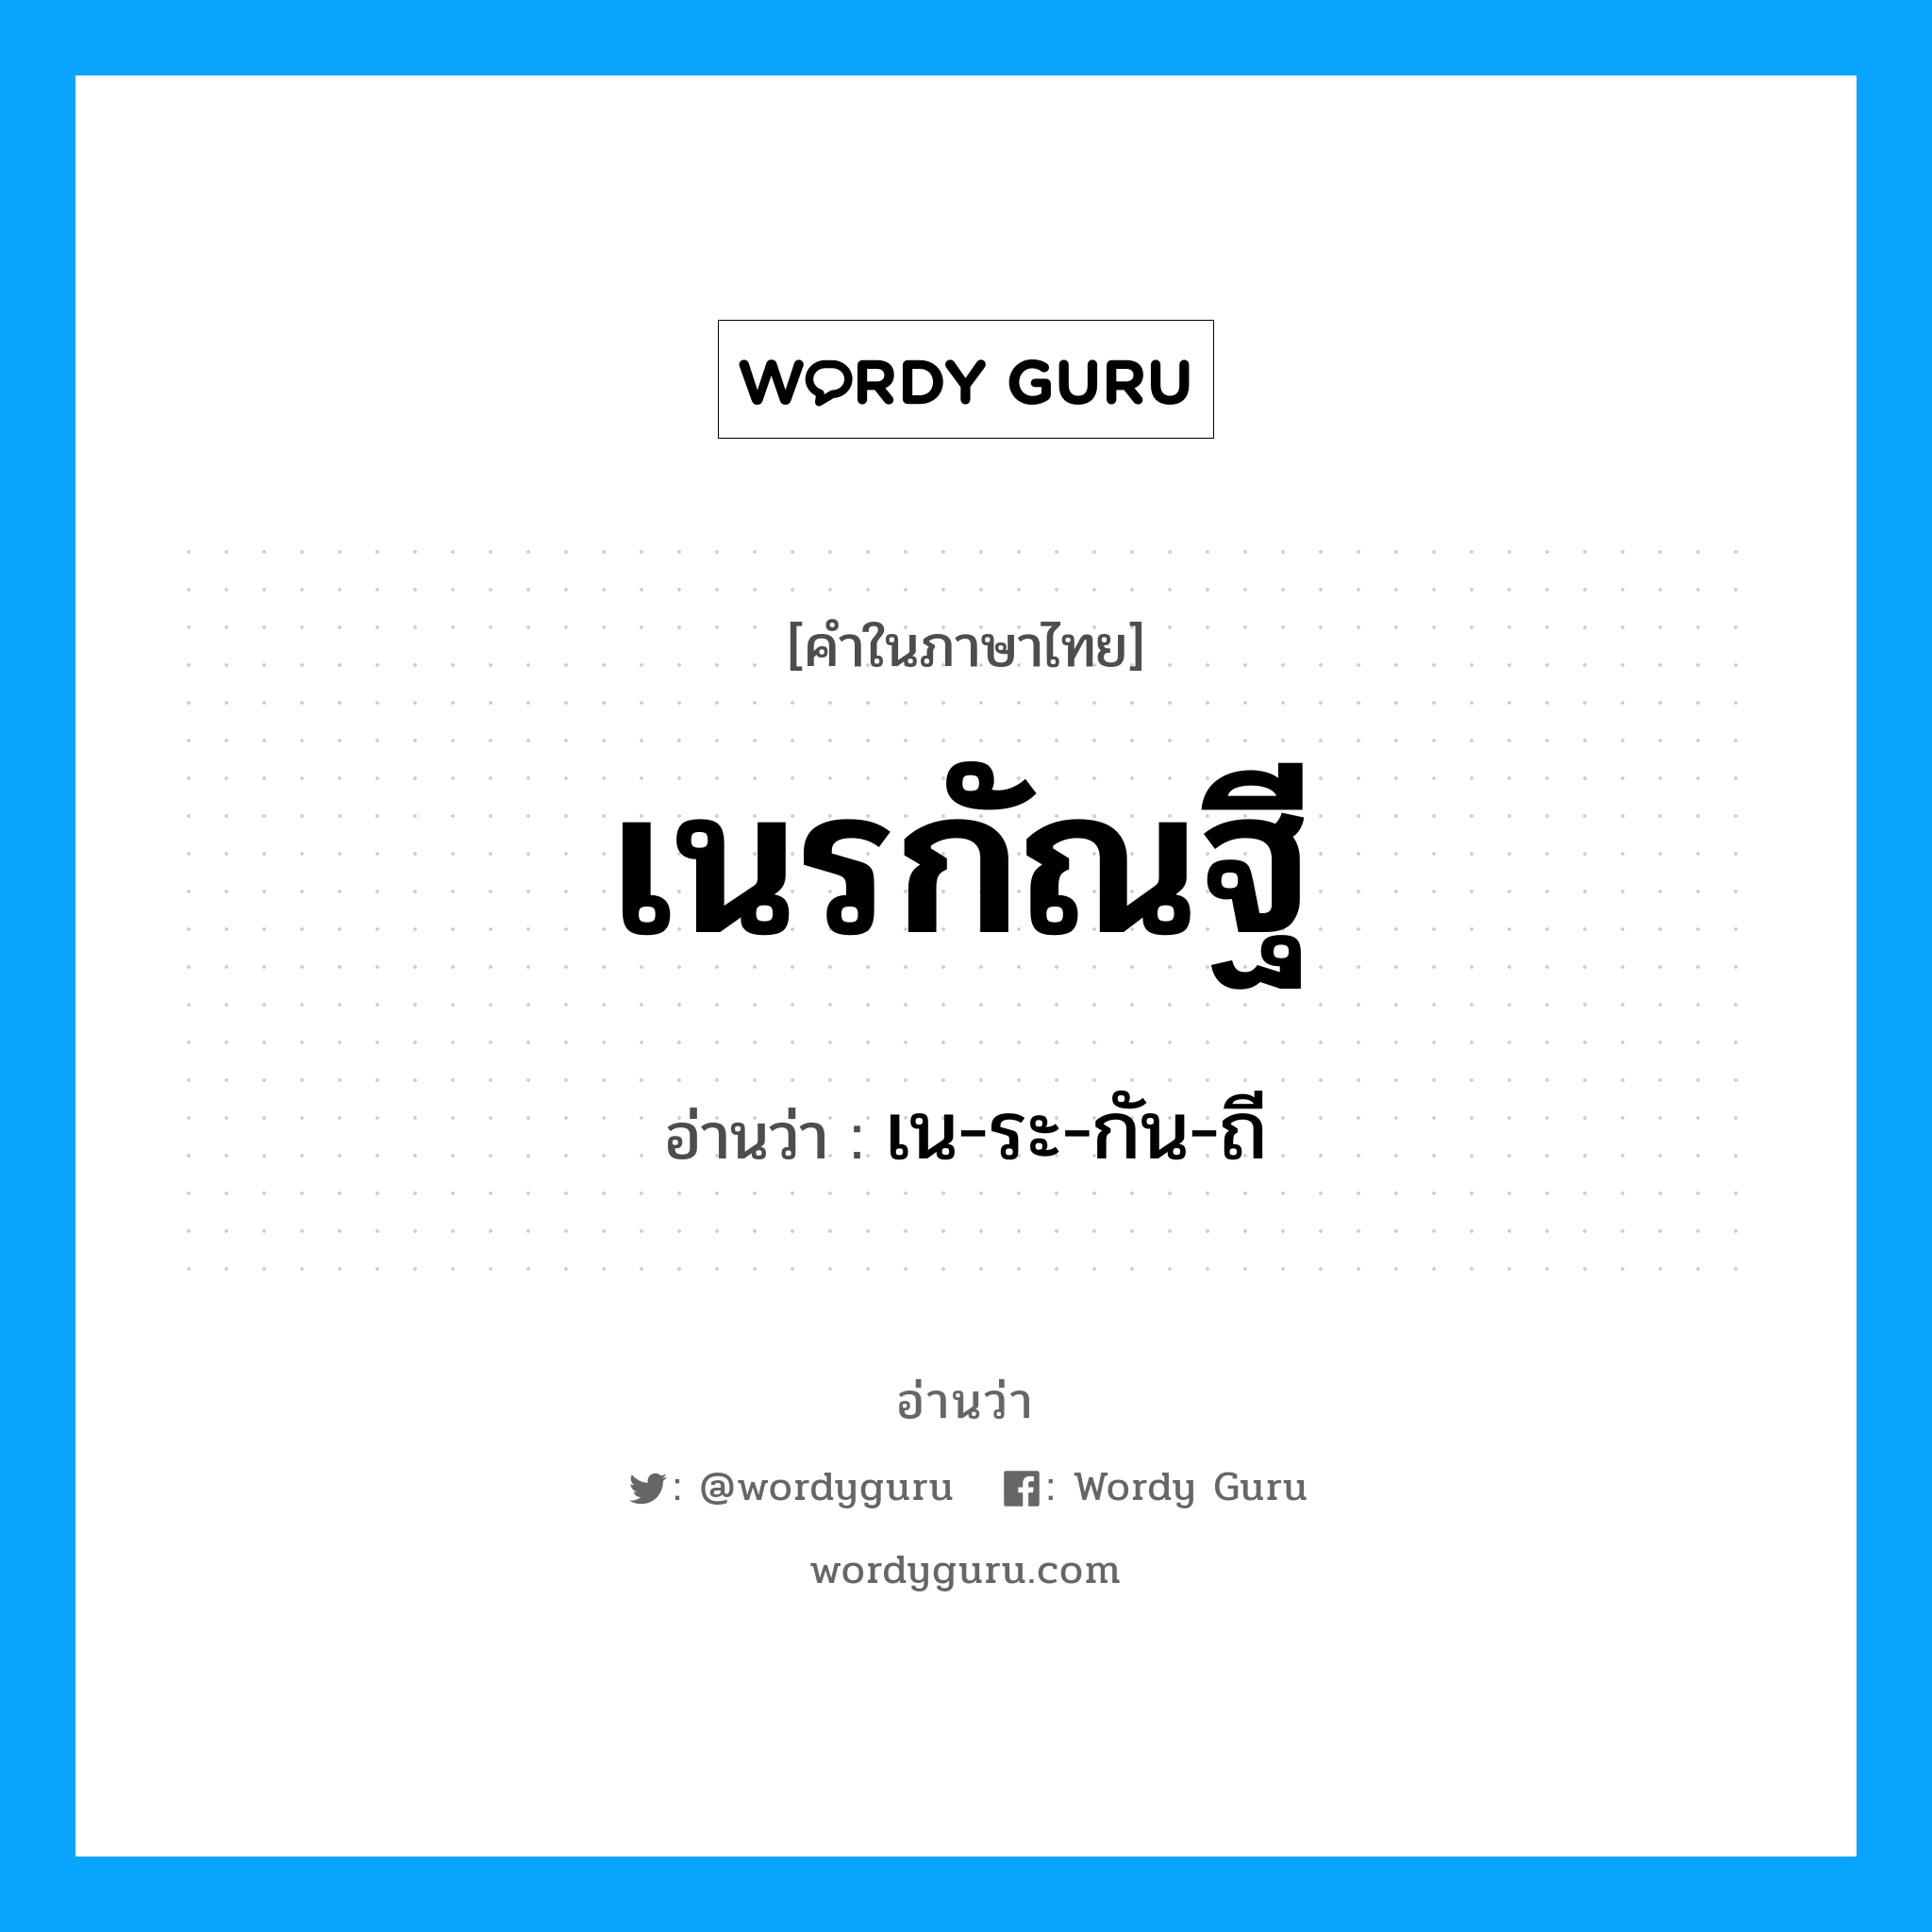 เน-ระ-กัน-ถี เป็นคำอ่านของคำไหน?, คำในภาษาไทย เน-ระ-กัน-ถี อ่านว่า เนรกัณฐี